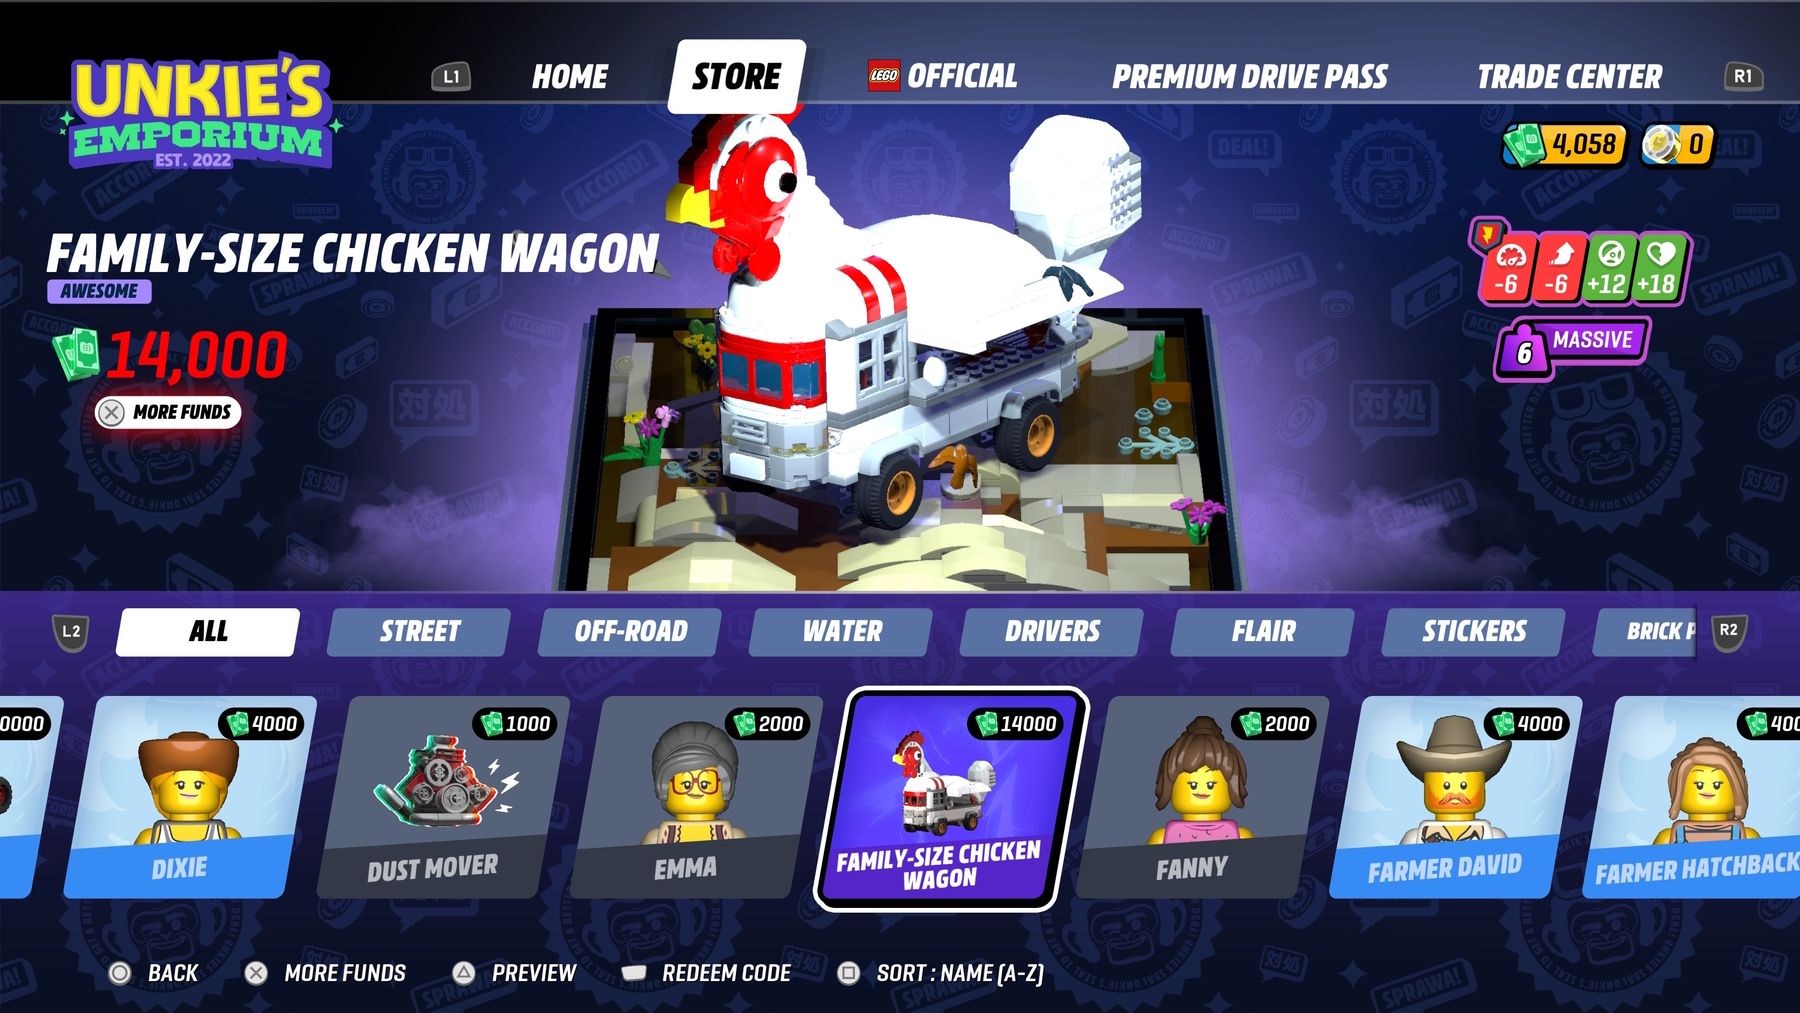 Tienda LEGO 2K Drive Microtransations en Unkie's Emporium: imagen que muestra el carrito de pollo de tamaño familiar que se puede comprar por $ 14,000 en el juego